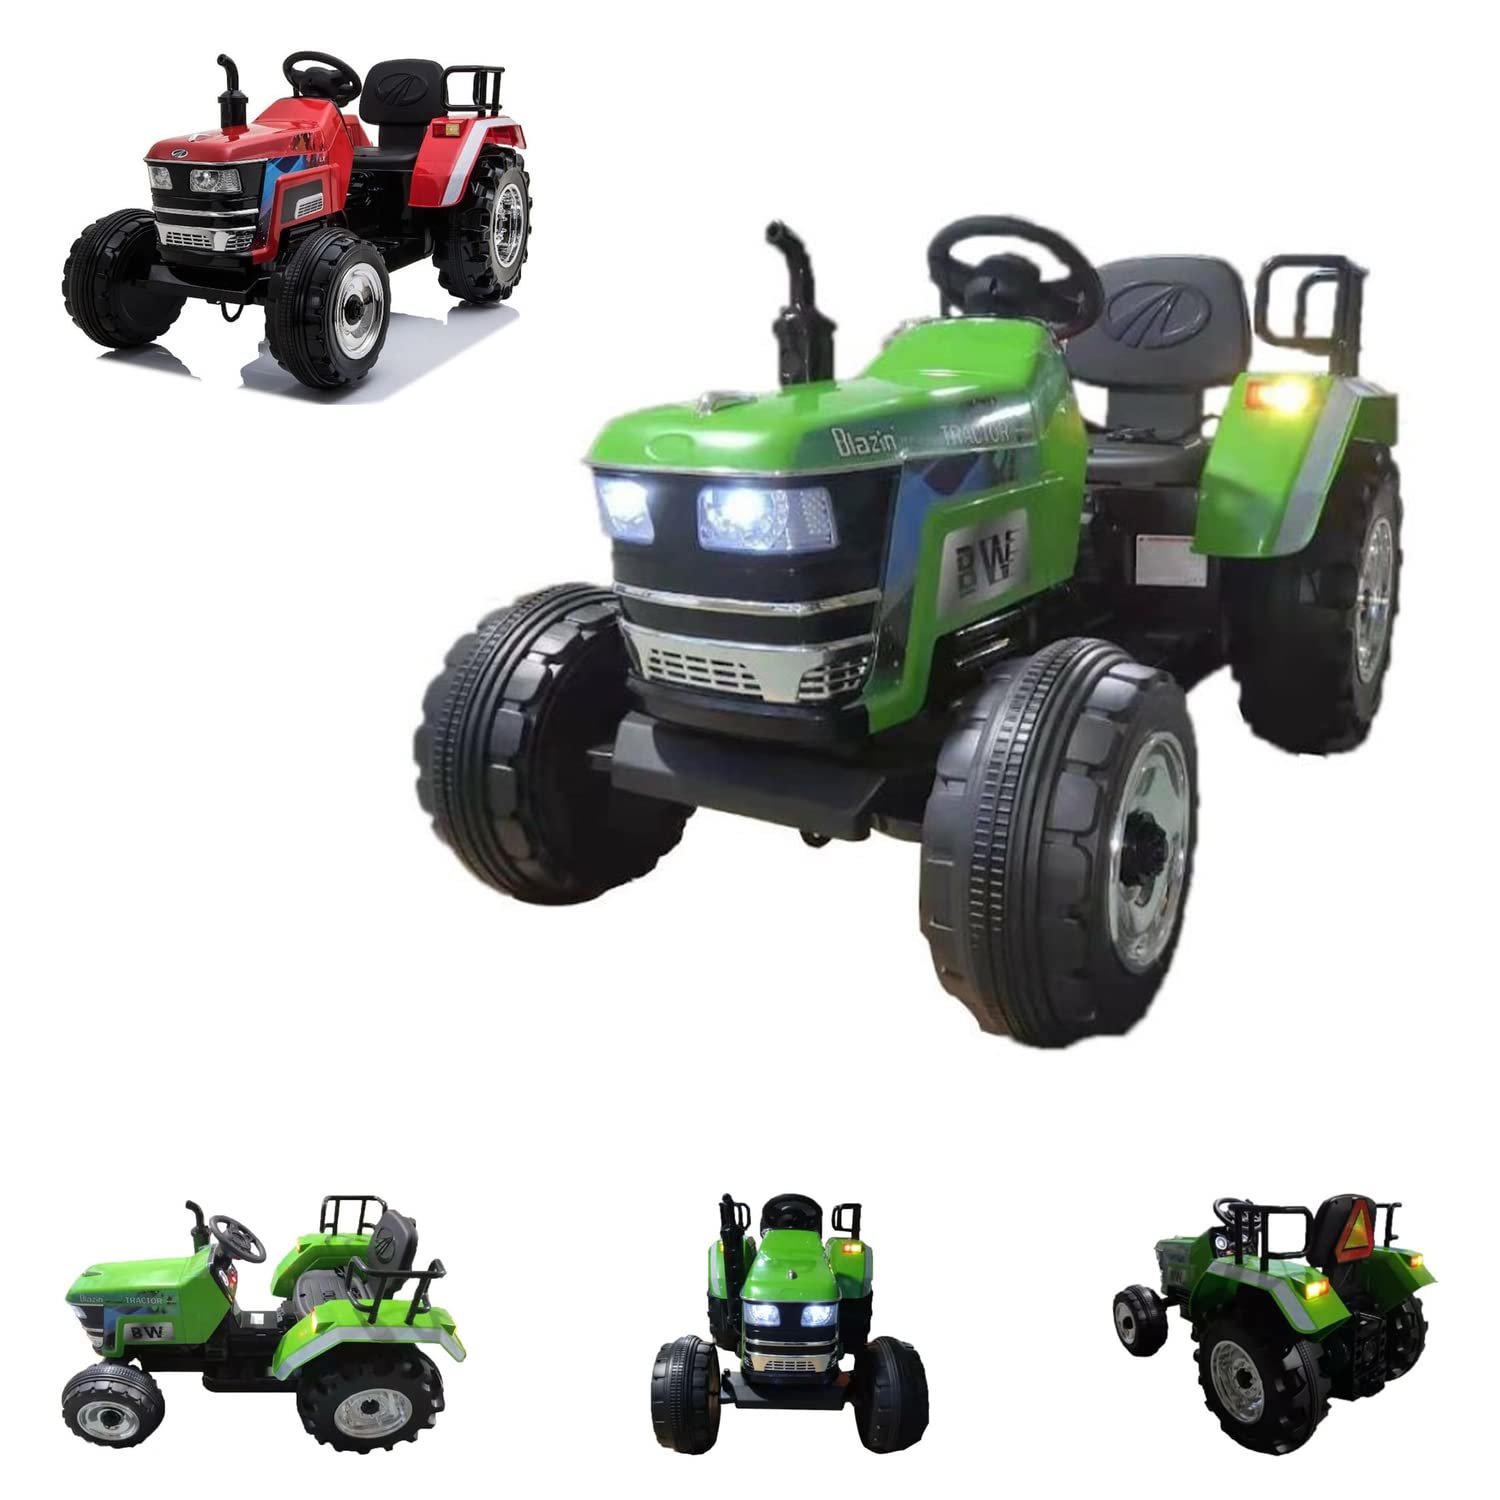 Elektro Kinderfahrauto - Elektro Traktor groß - 12V7A Akku,2 Motoren 35W mit 2,4Ghz Fernsteuerung (Grün)